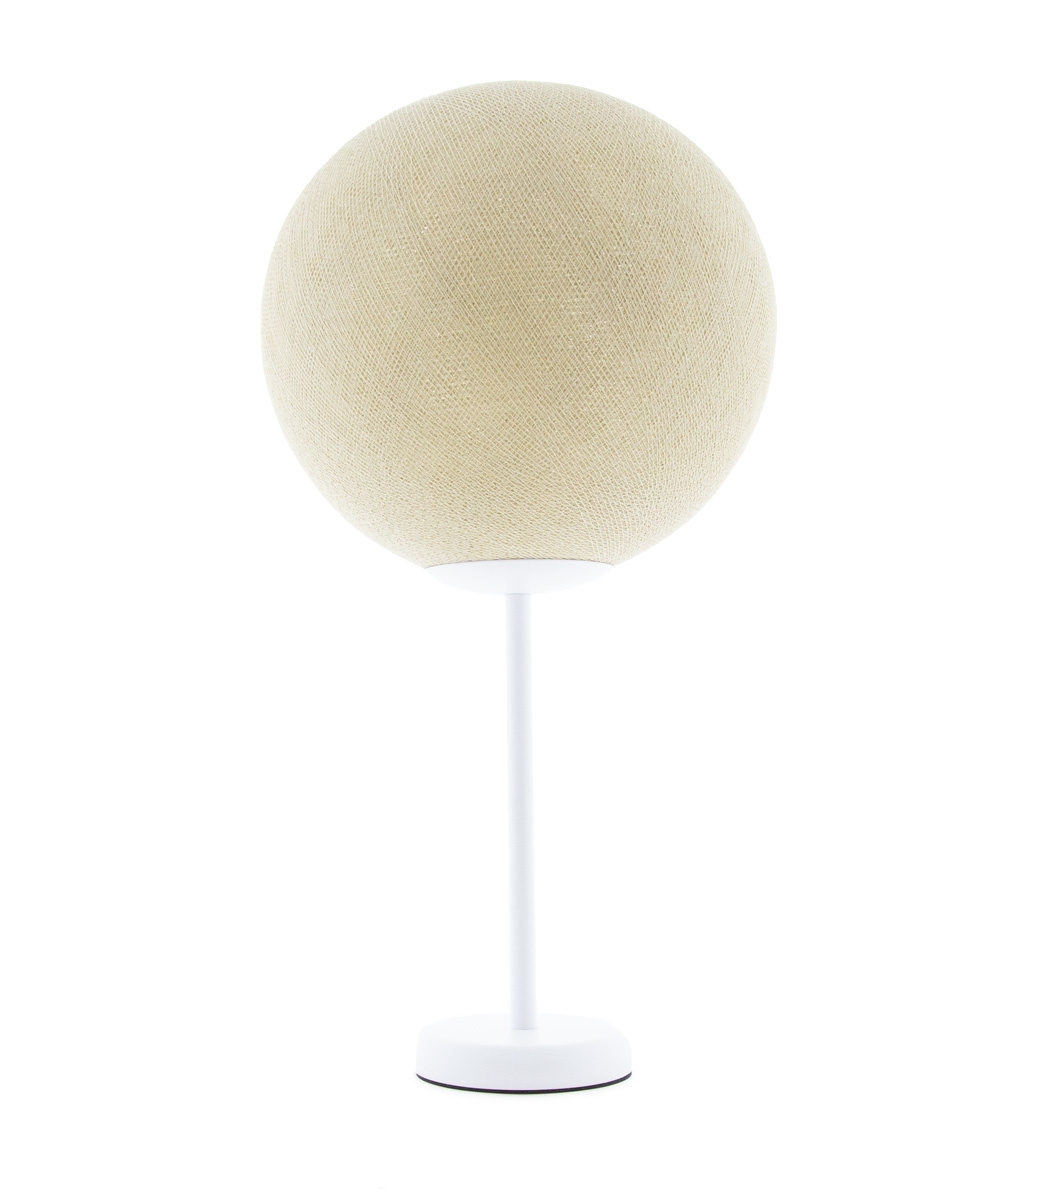 Deluxe staande lamp mid - Cream